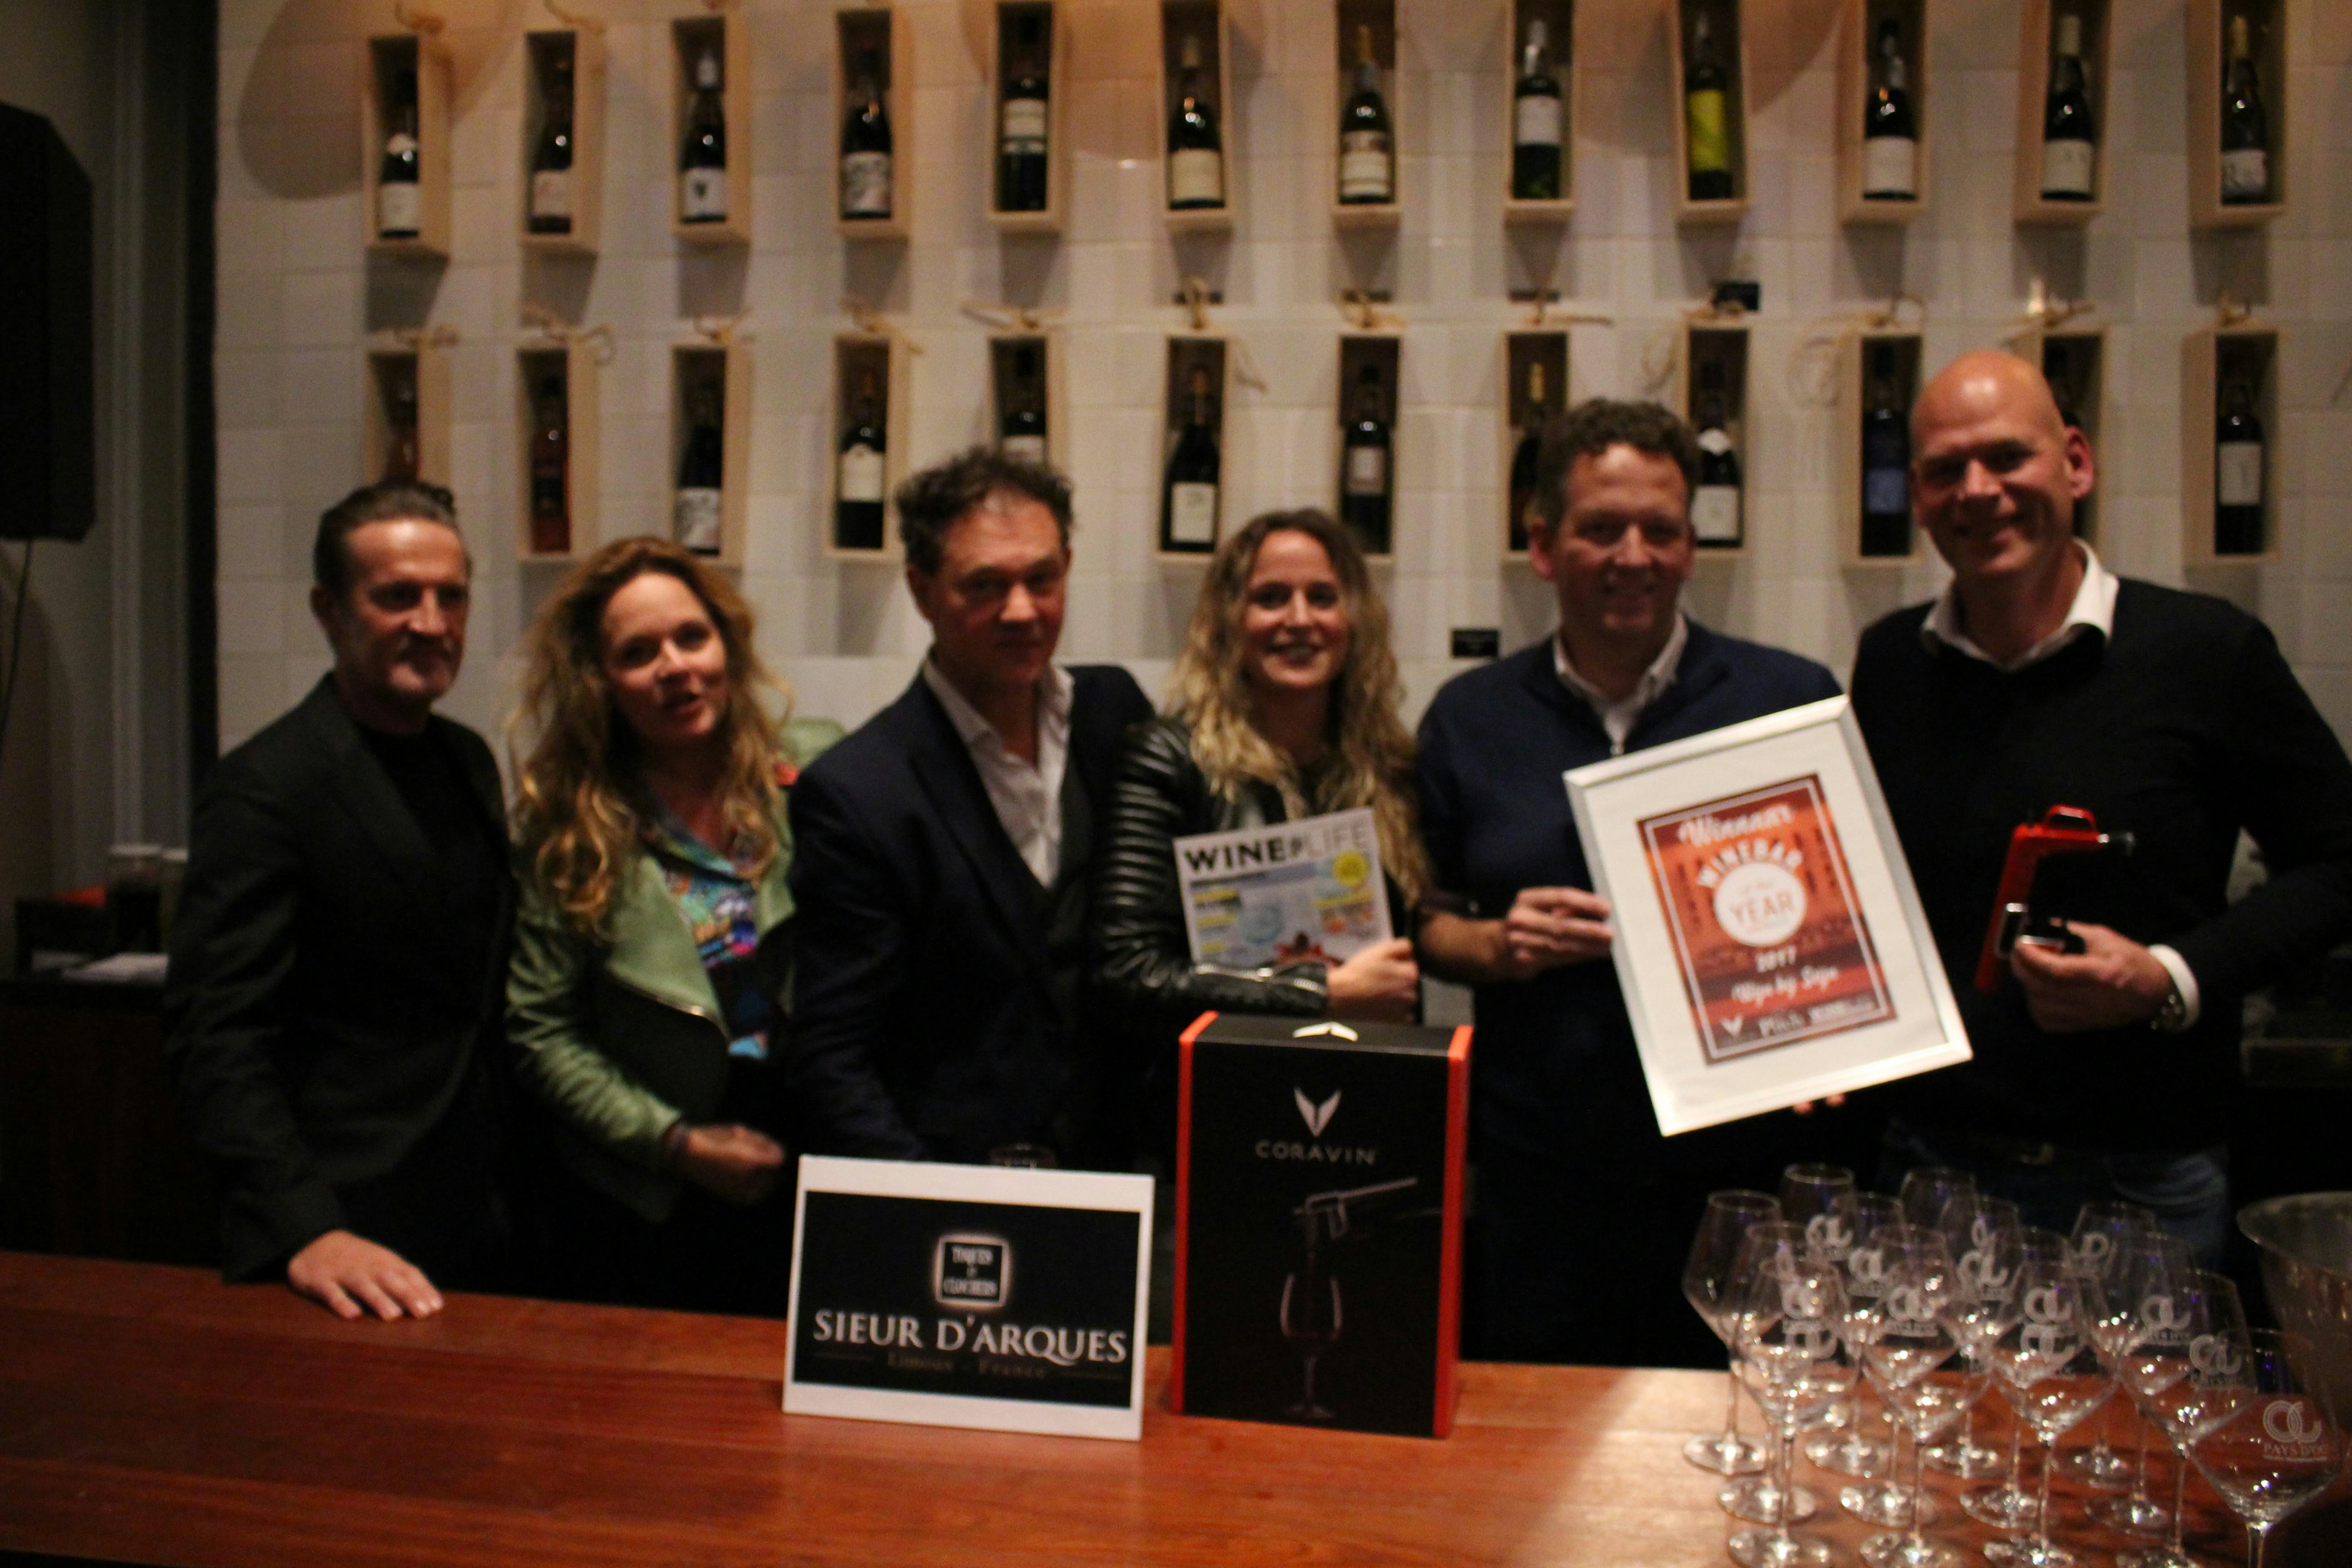 Wijn bij Stijn uit Den Bosch bekroond tot Wine Bar of the Year 2017